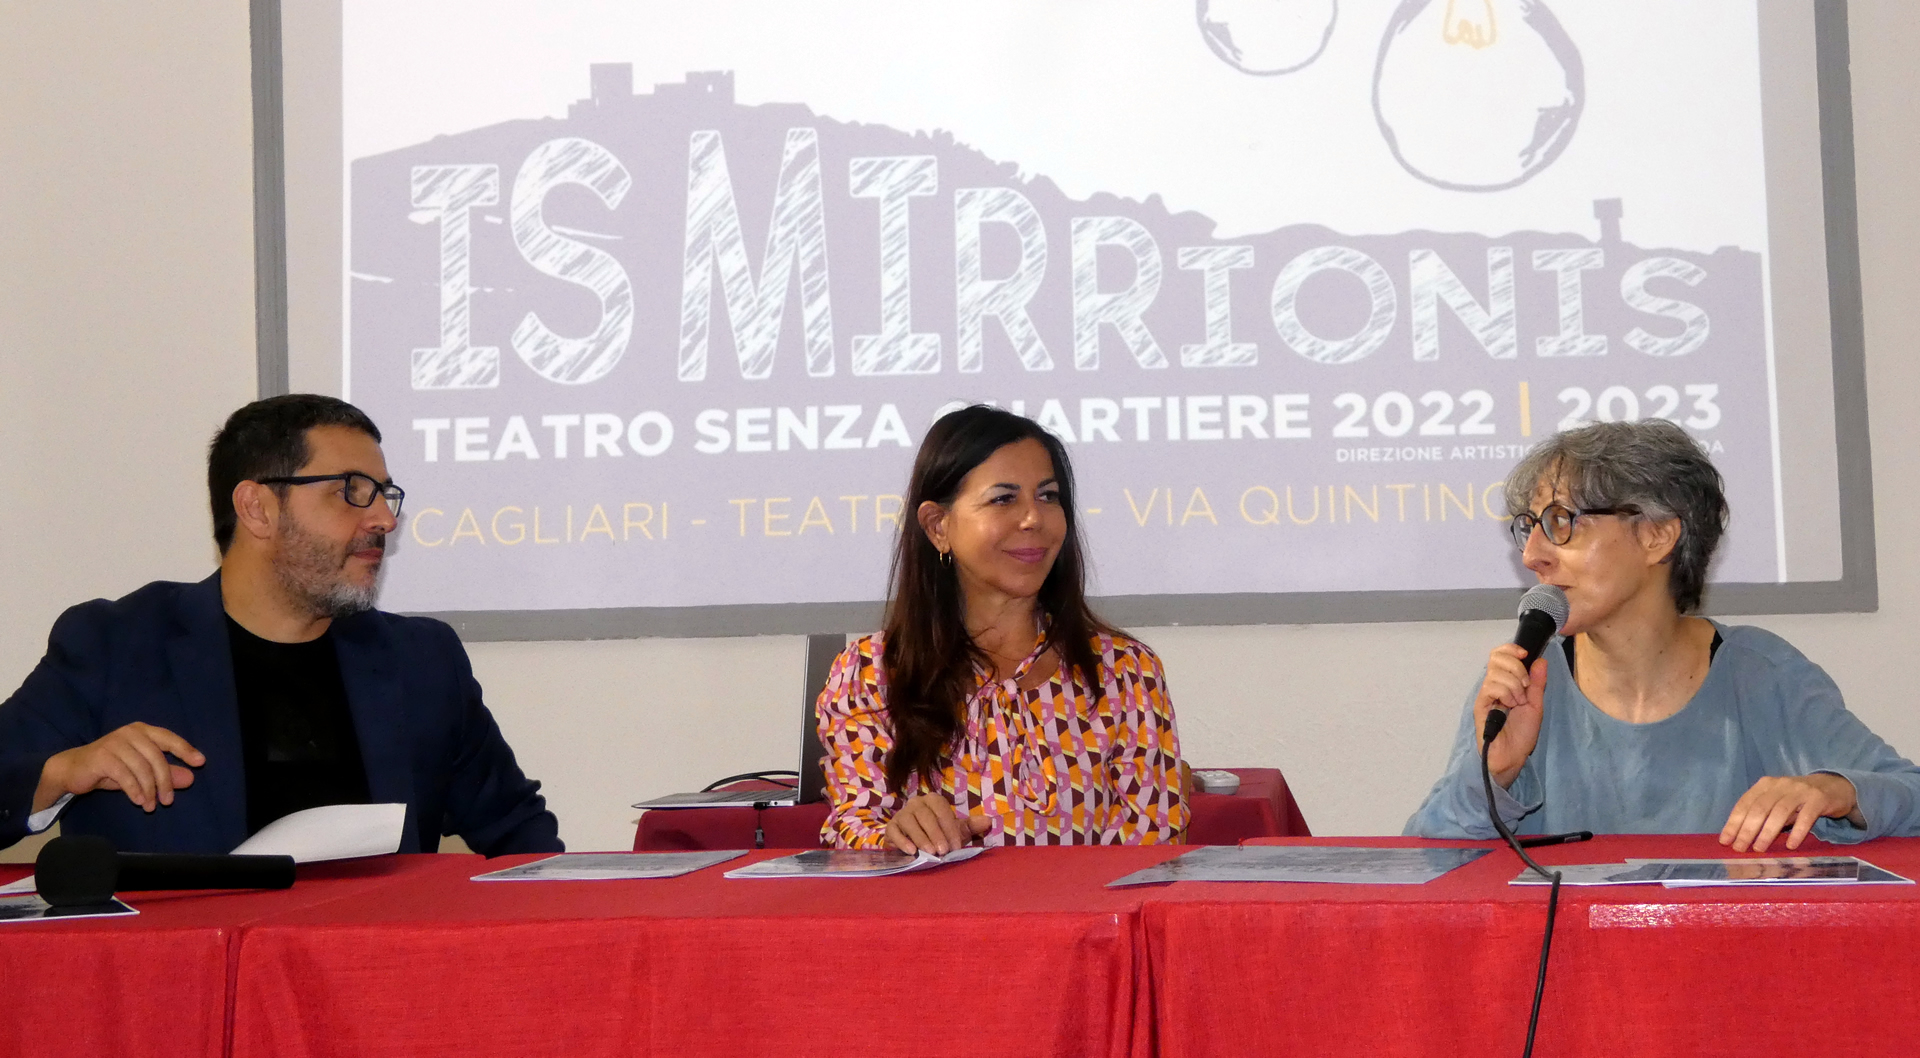 Picciau - Stagione di Teatro Senza Quartiere 2022-2023